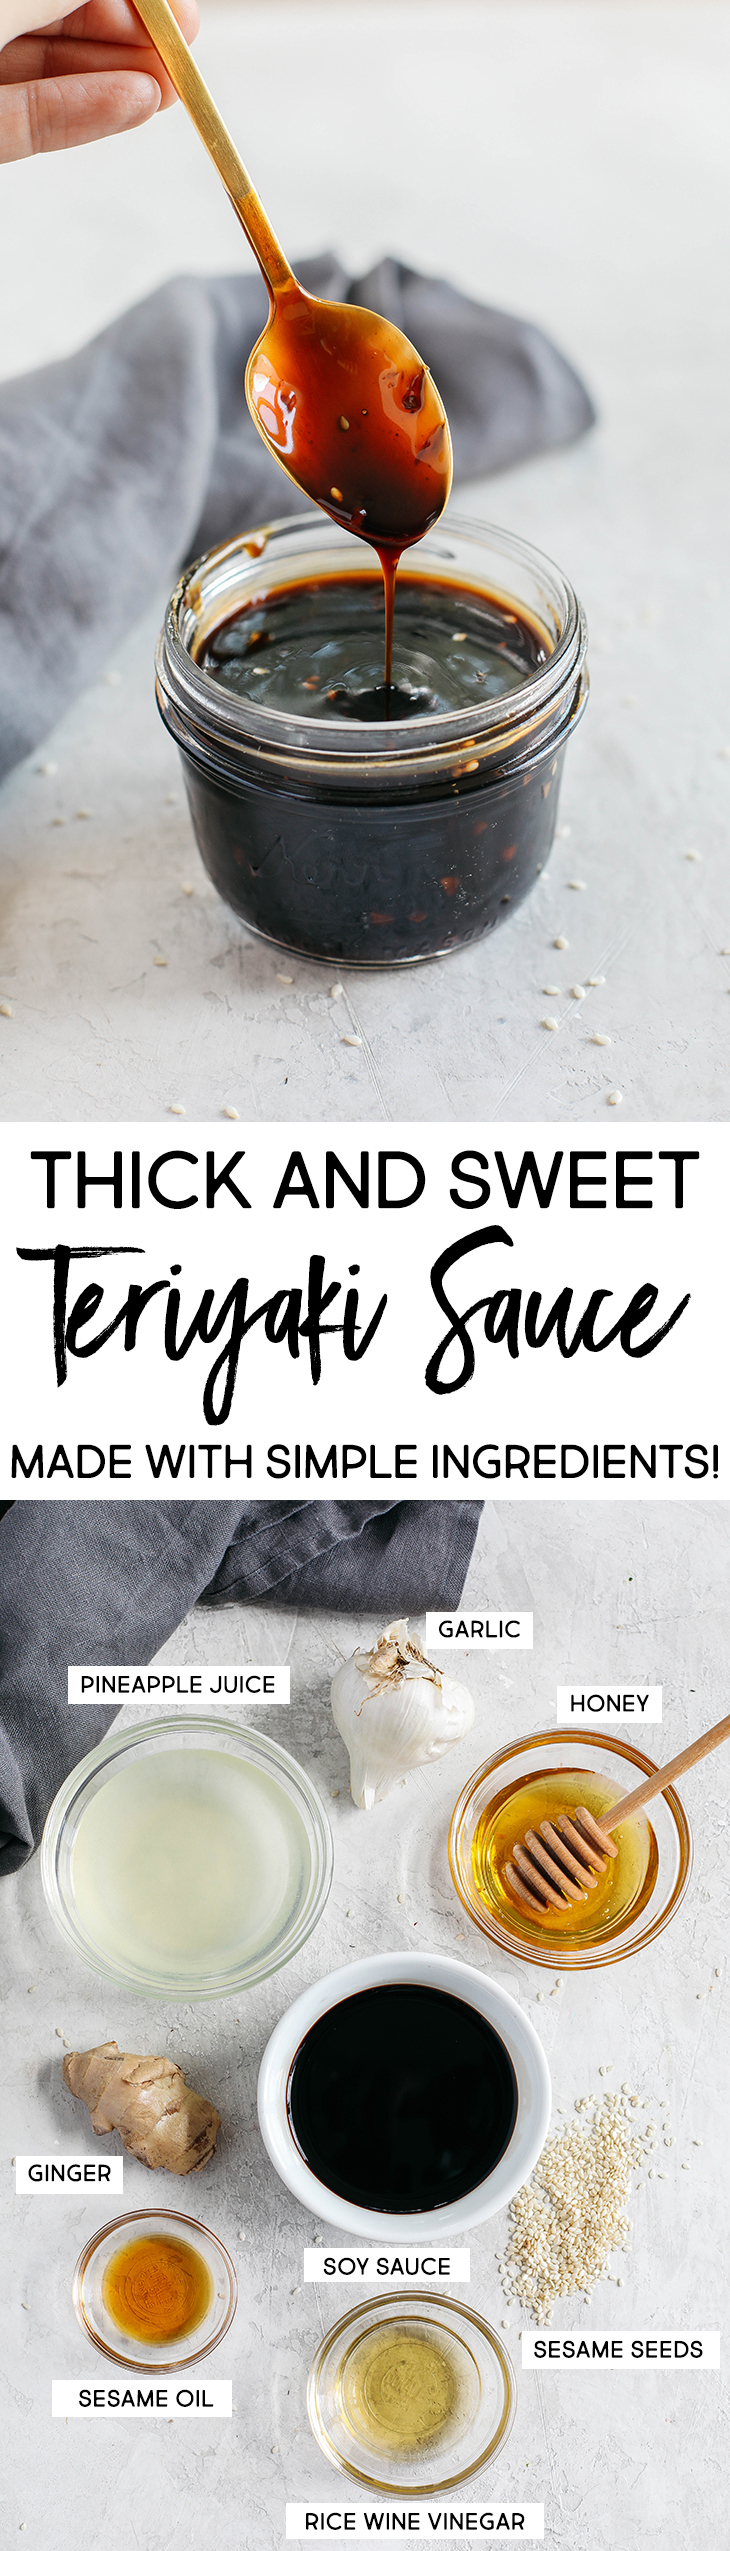 Ignore as compras na loja e faça este molho Teriyaki EASY Saudável, que é pegajoso, doce e feito em apenas 5 minutos, usando ingredientes simples e frescos que você provavelmente já tem à mão!